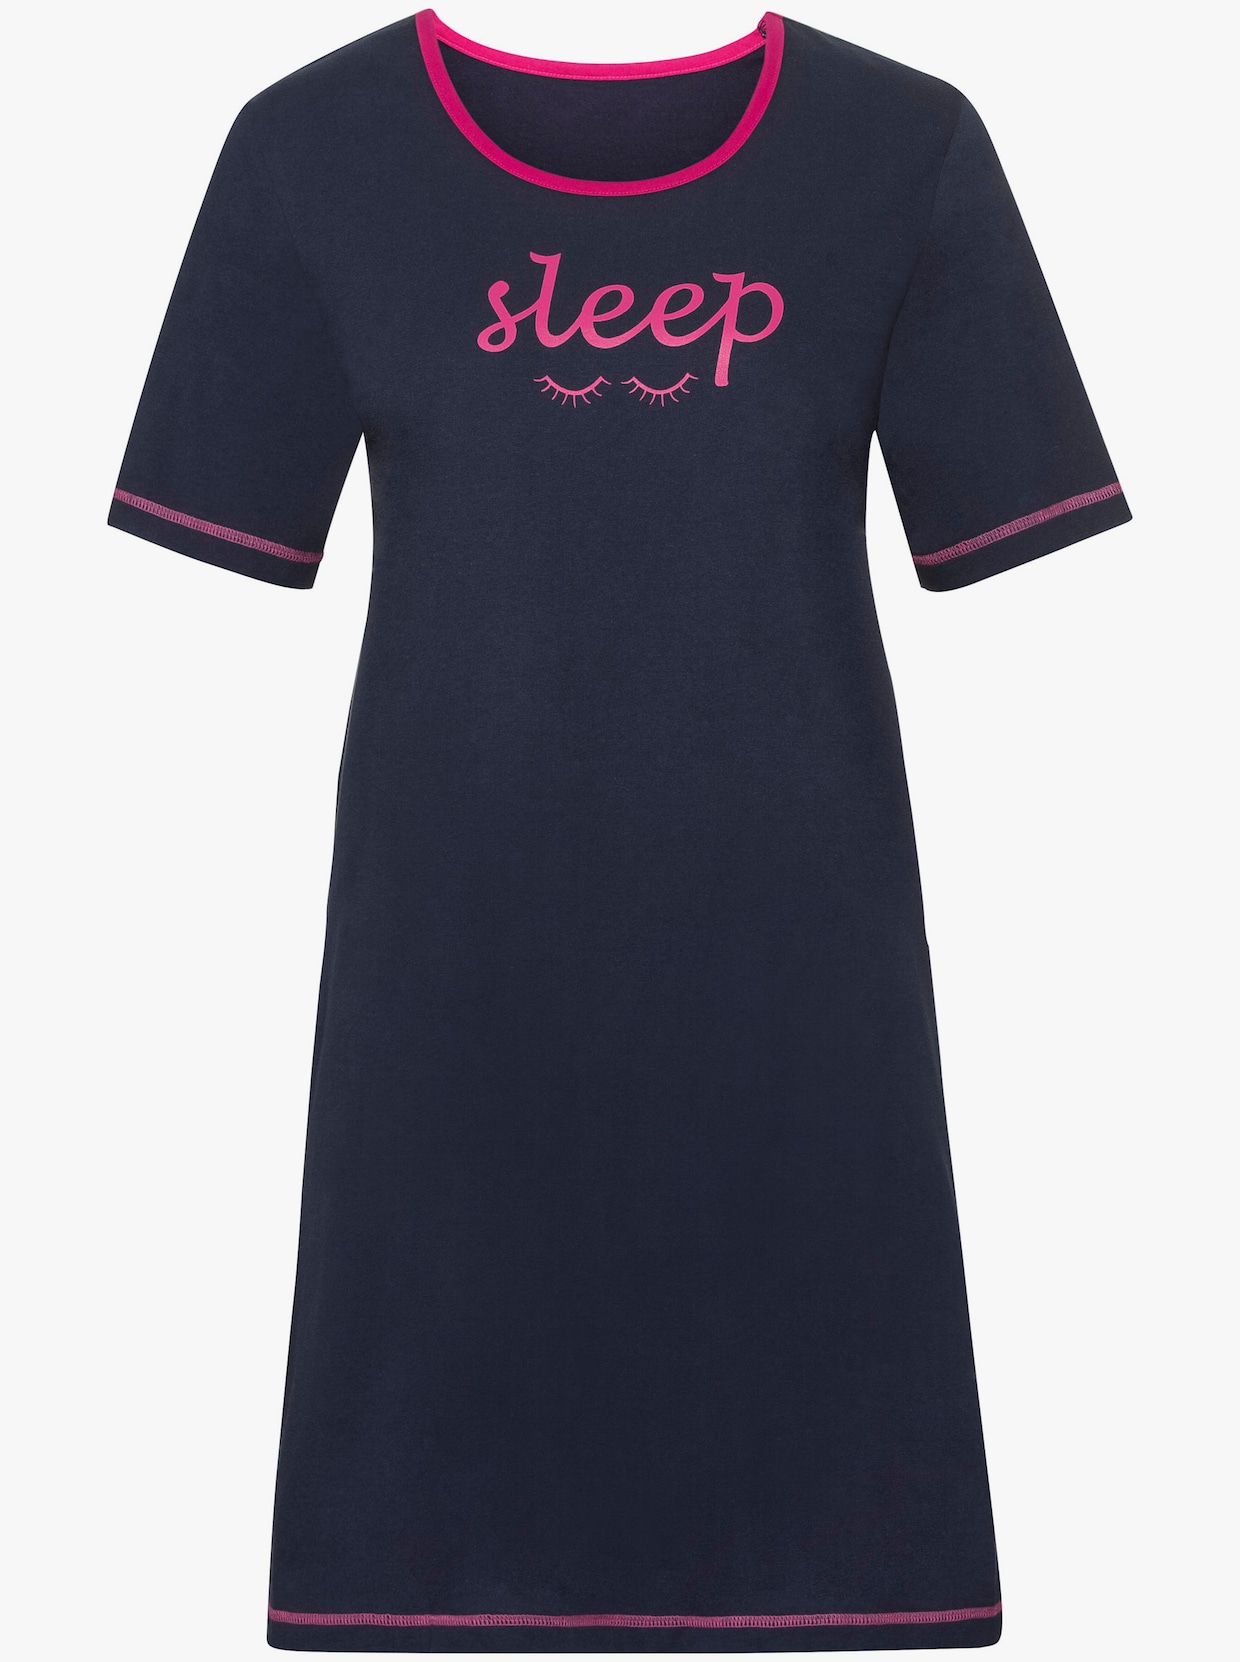 wäschepur Sleepshirts - pink + marine